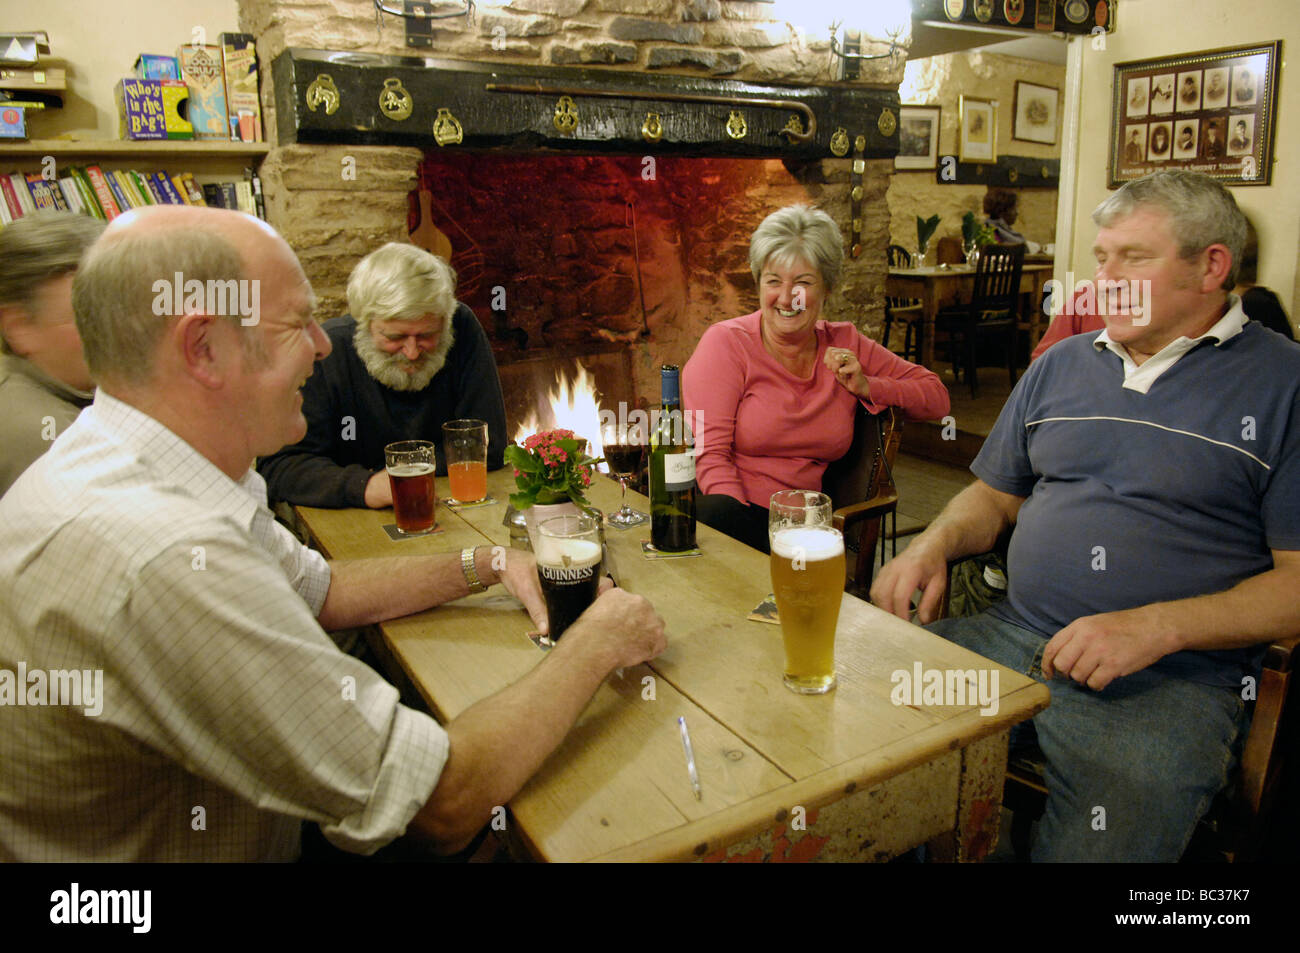 Locals in pub bar, UK Stock Photo